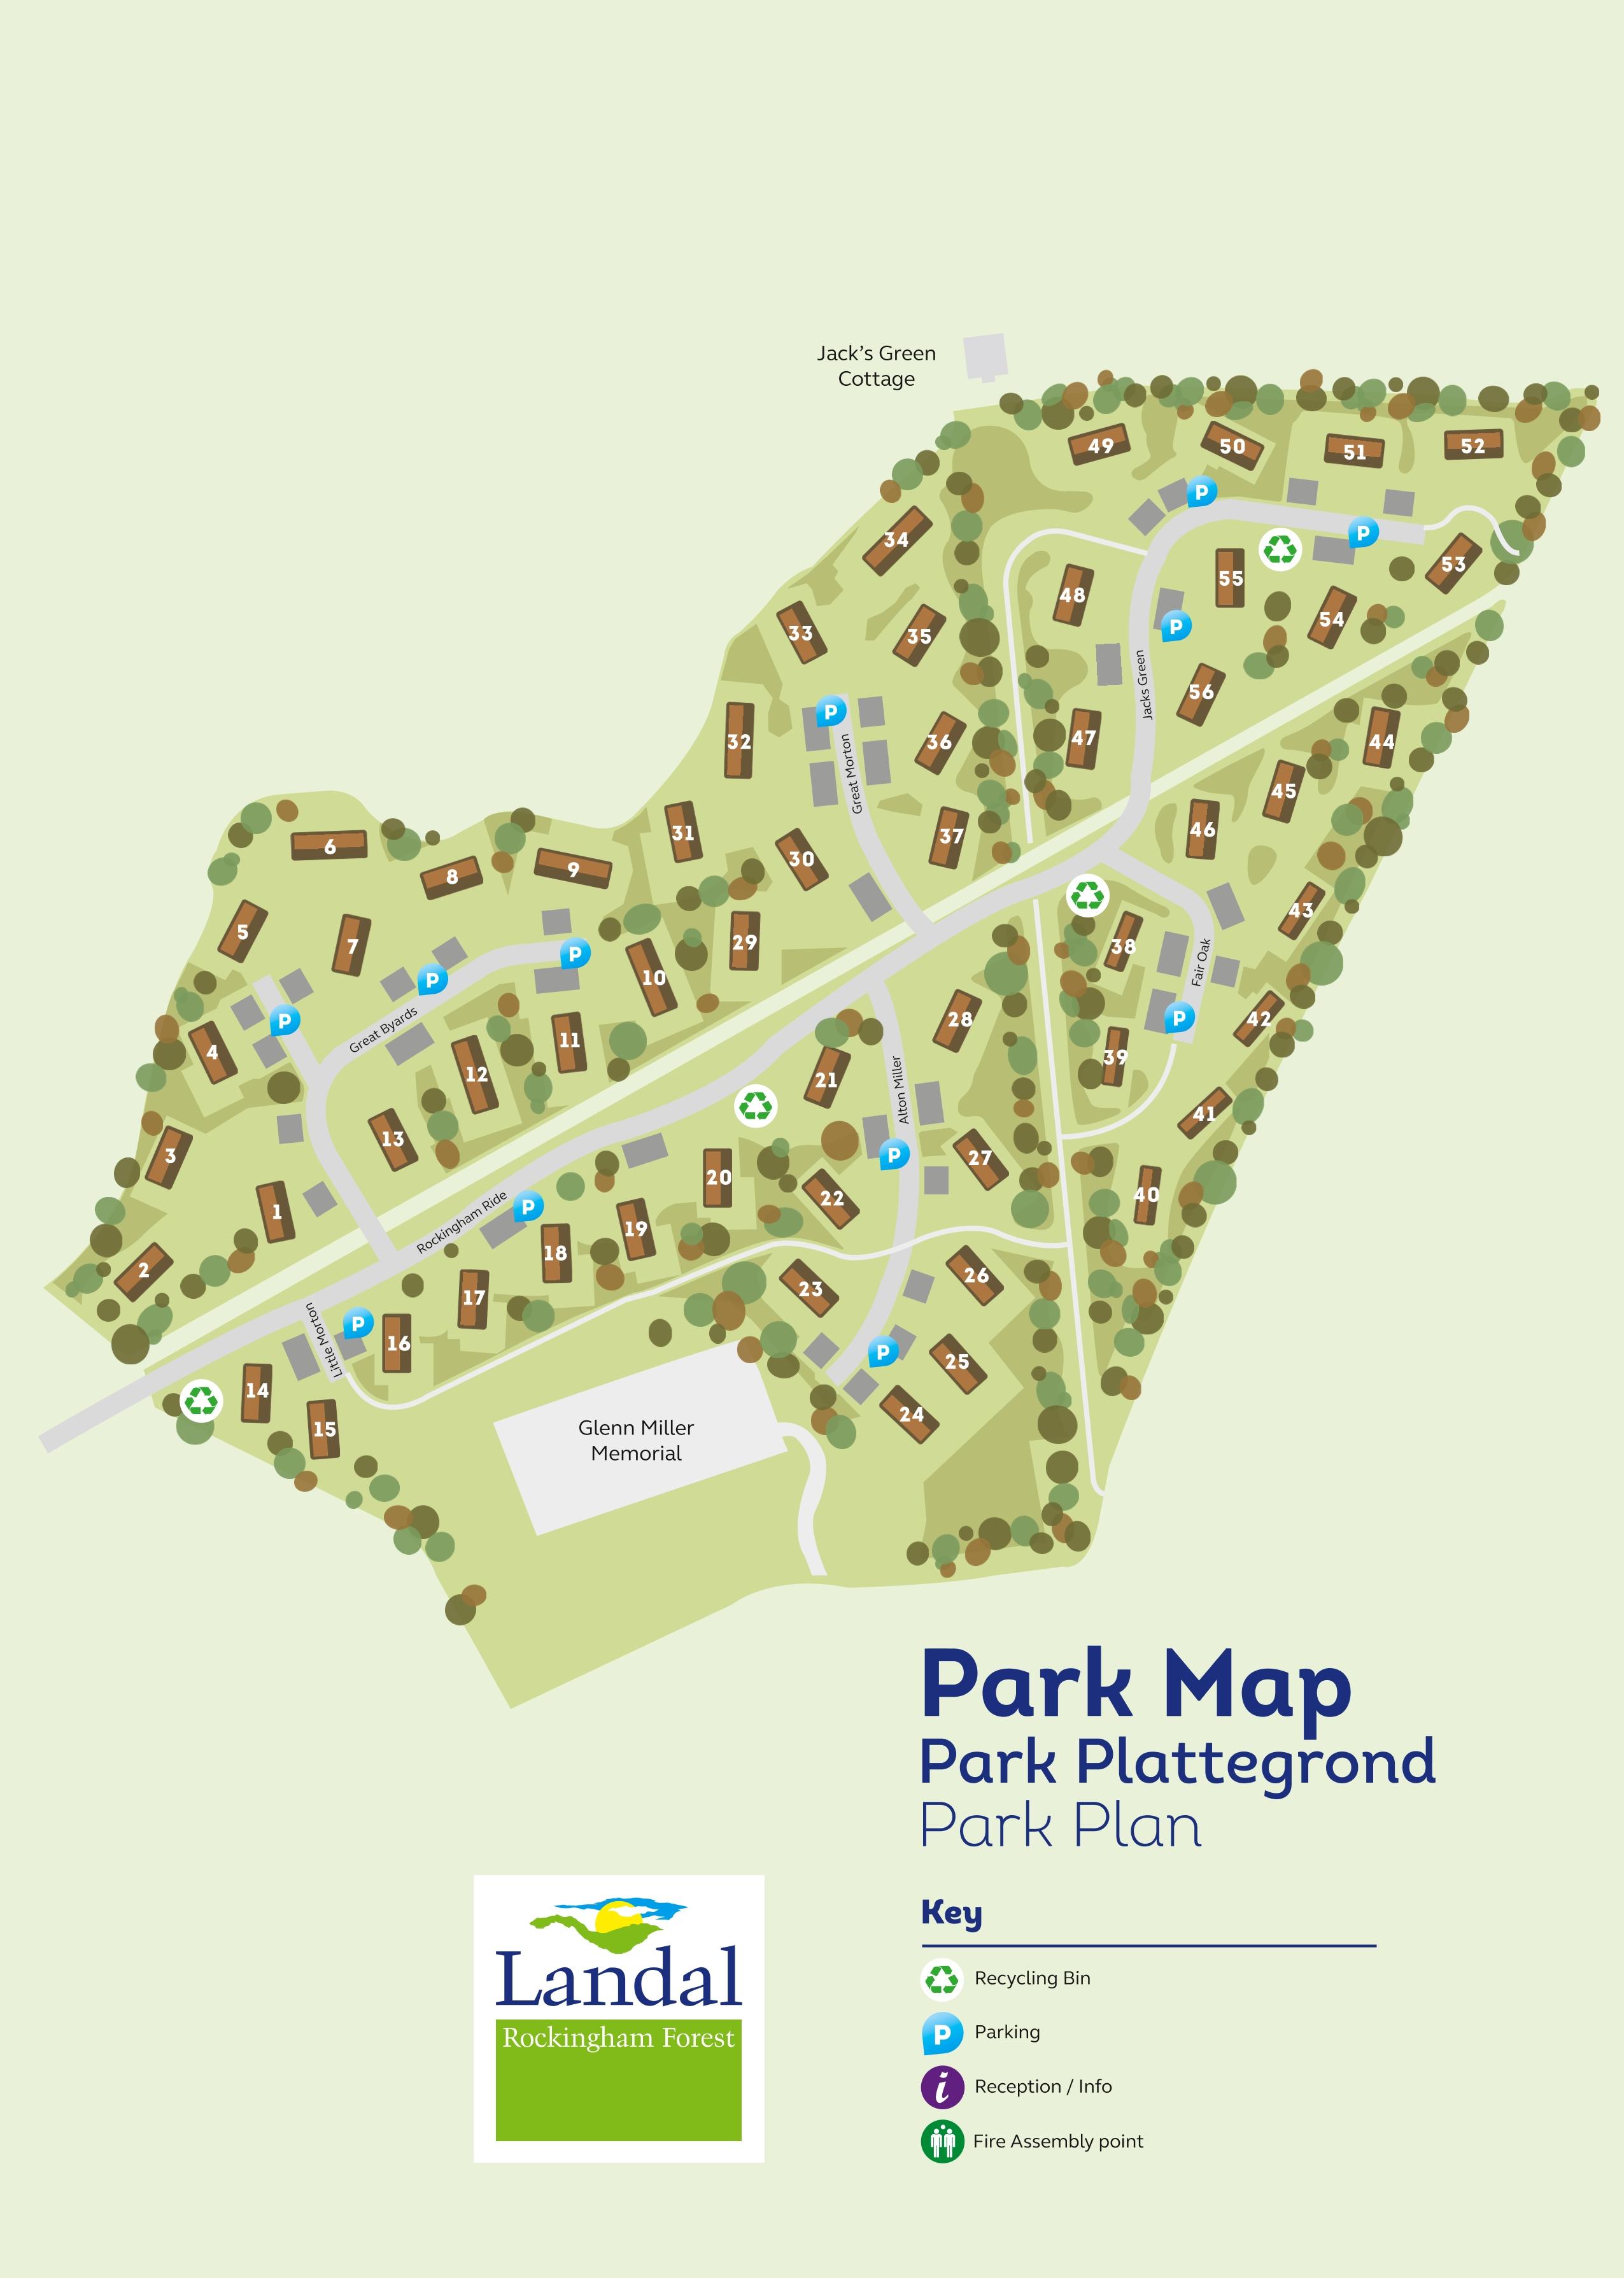 Parkplan Landal Rockingham Forest